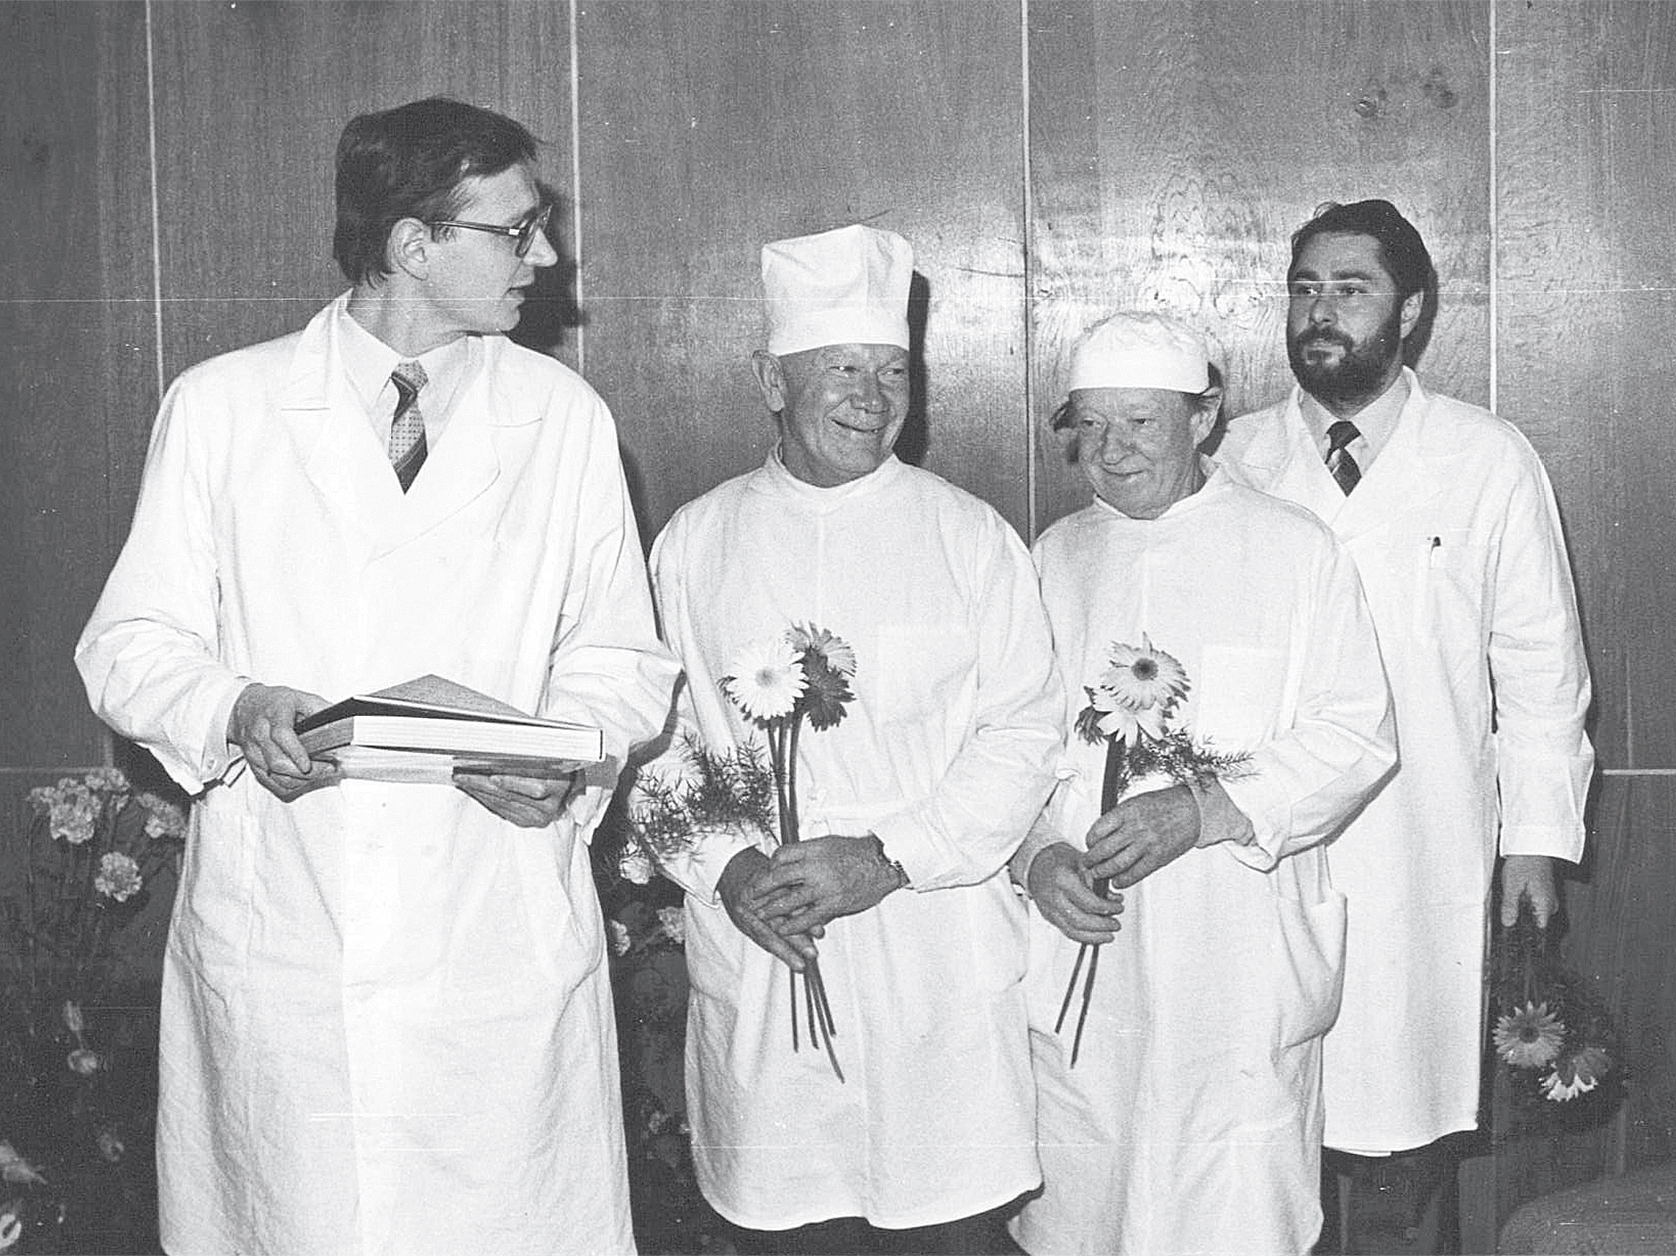 Liepājas Reģionālās slimnīcas 4. nodaļas ķirurgu kolektīvs (no kreisās): Viesturs Rozītis, Bruno Grasis, Helmuts Klēšmits, Egils Samedovs, 1987. gads